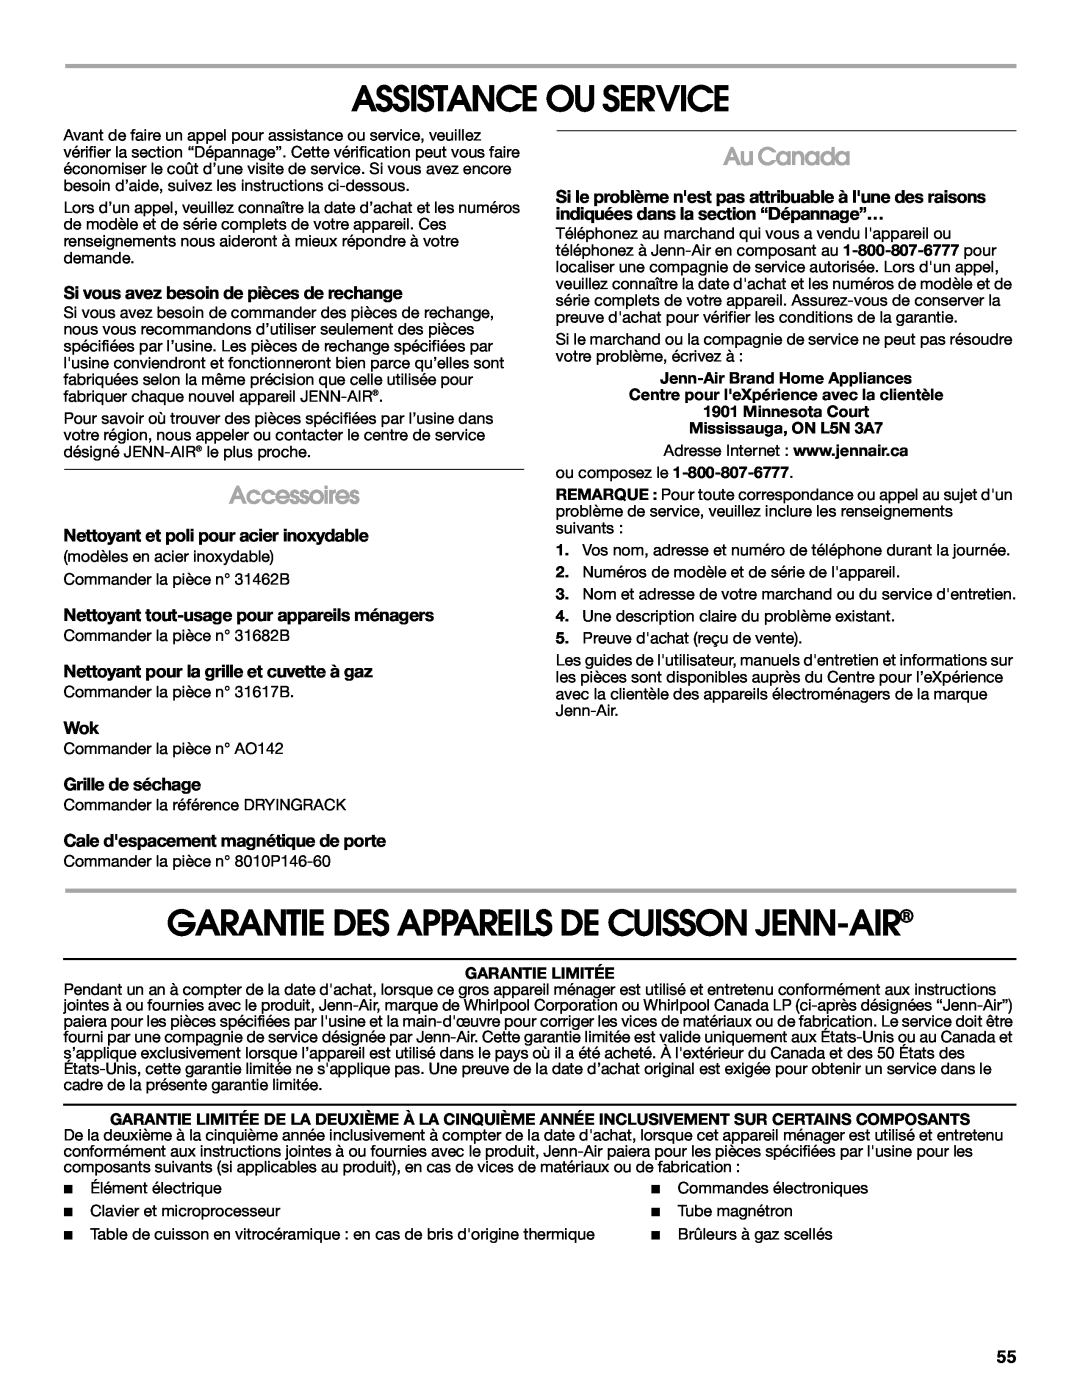 Jenn-Air JGS9900 manual Assistance Ou Service, Garantie Des Appareils De Cuisson Jenn-Air, Accessoires, Au Canada 